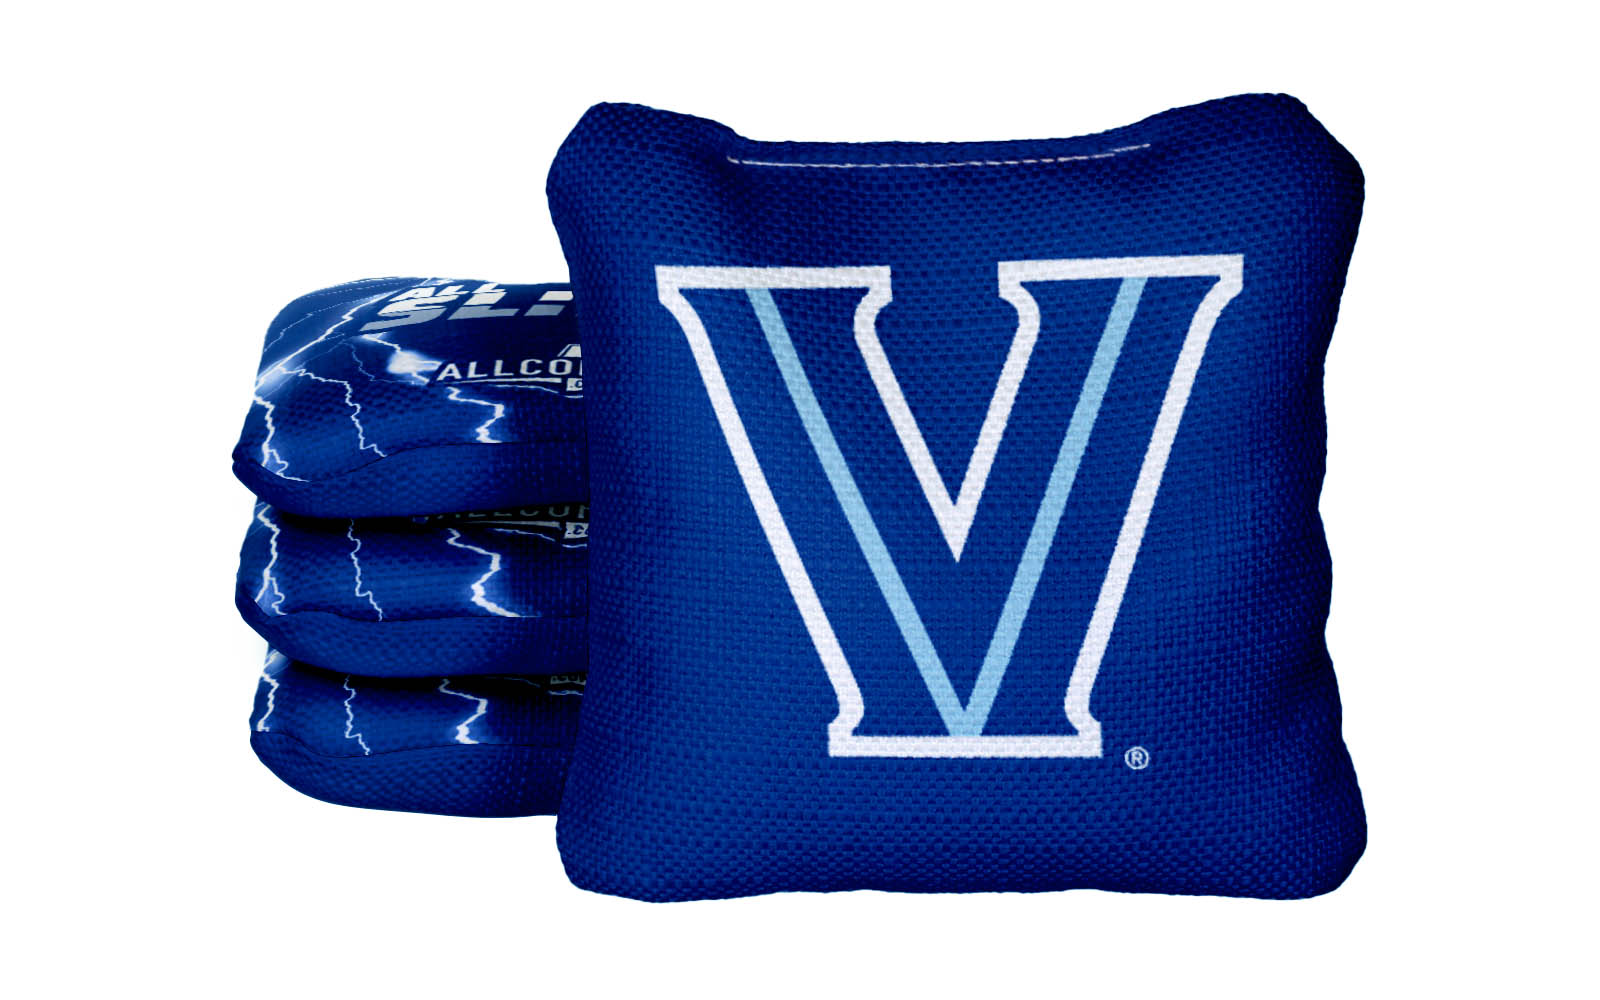 Officially Licensed Collegiate Cornhole Bags - All-Slide 2.0 - Set of 4 - Villanova University